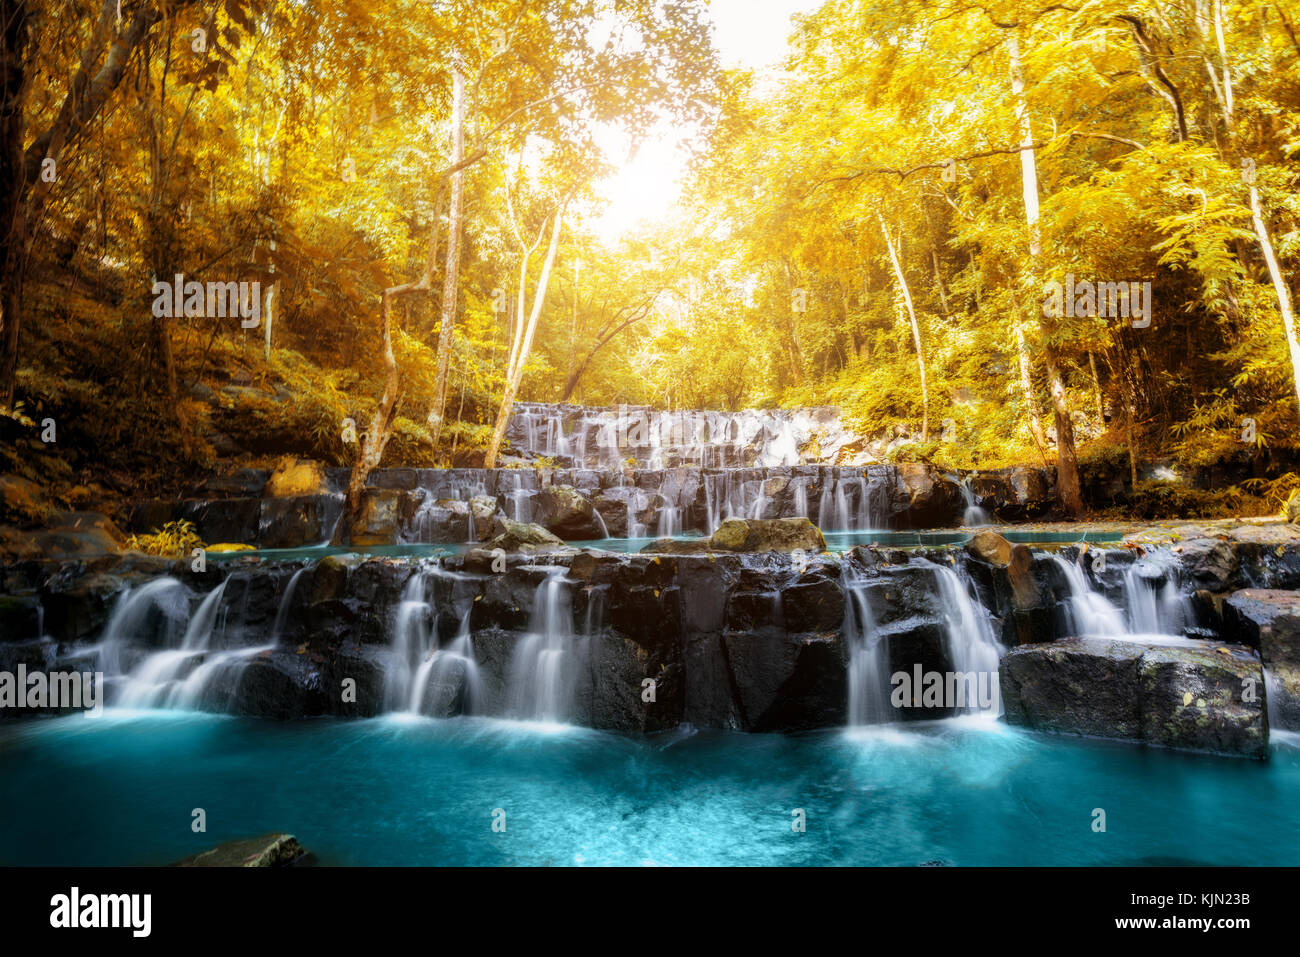 Sam lan Wasserfall ist schöner Wasserfall im tropischen Wald, Provinz Saraburi, Thailand. Stockfoto